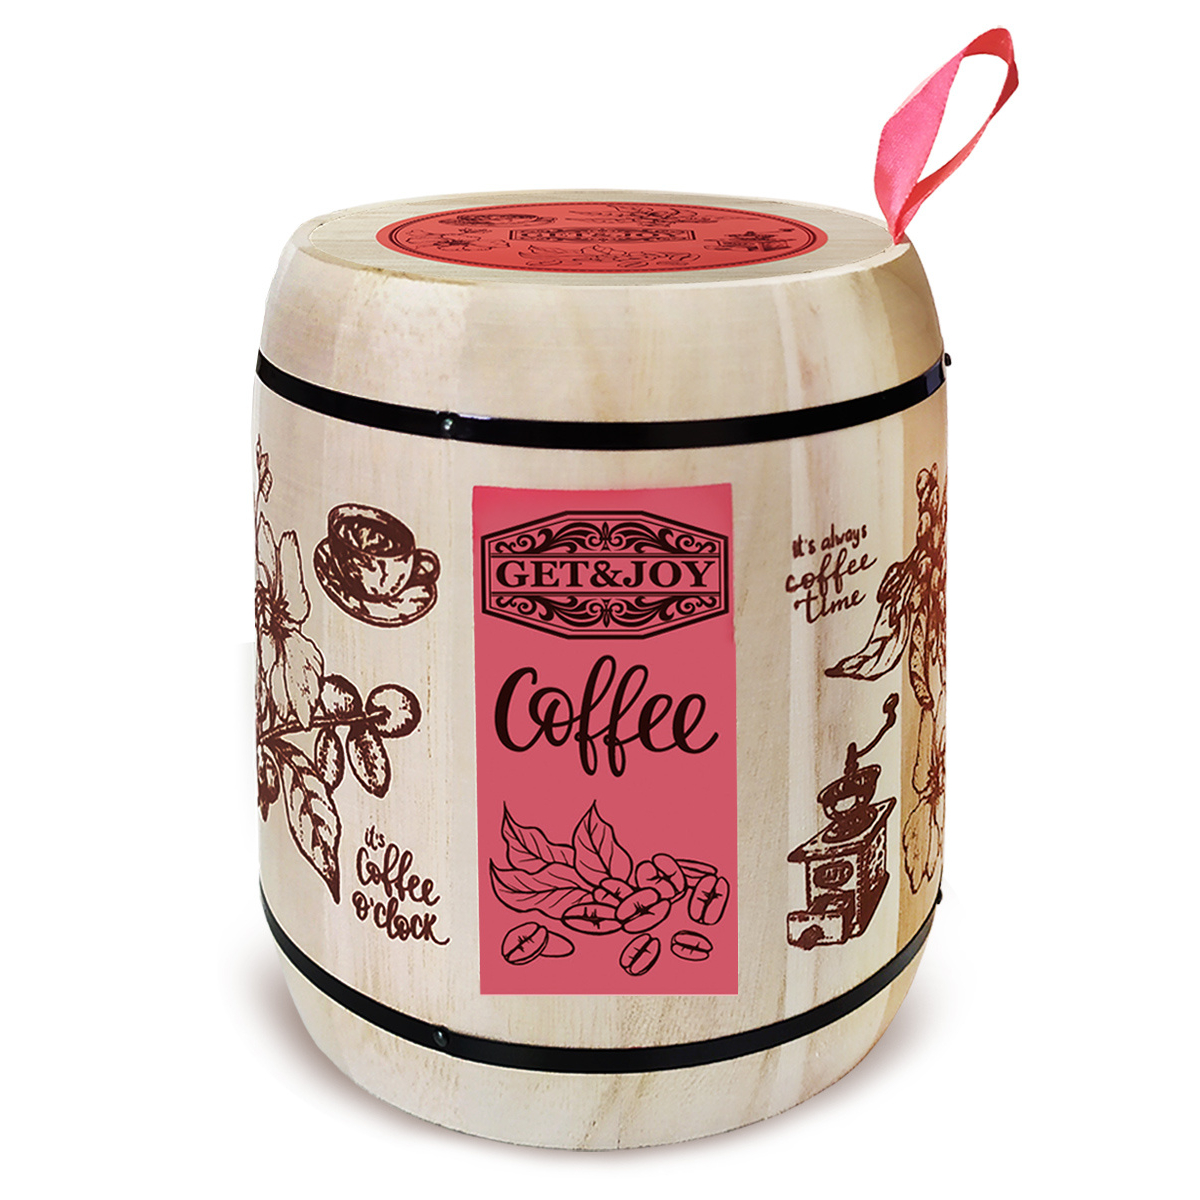 Кофе молотый Get&Joy Ирландский крем, розовый бочонок, 150 г кофе mr viet молотый лювак 250г